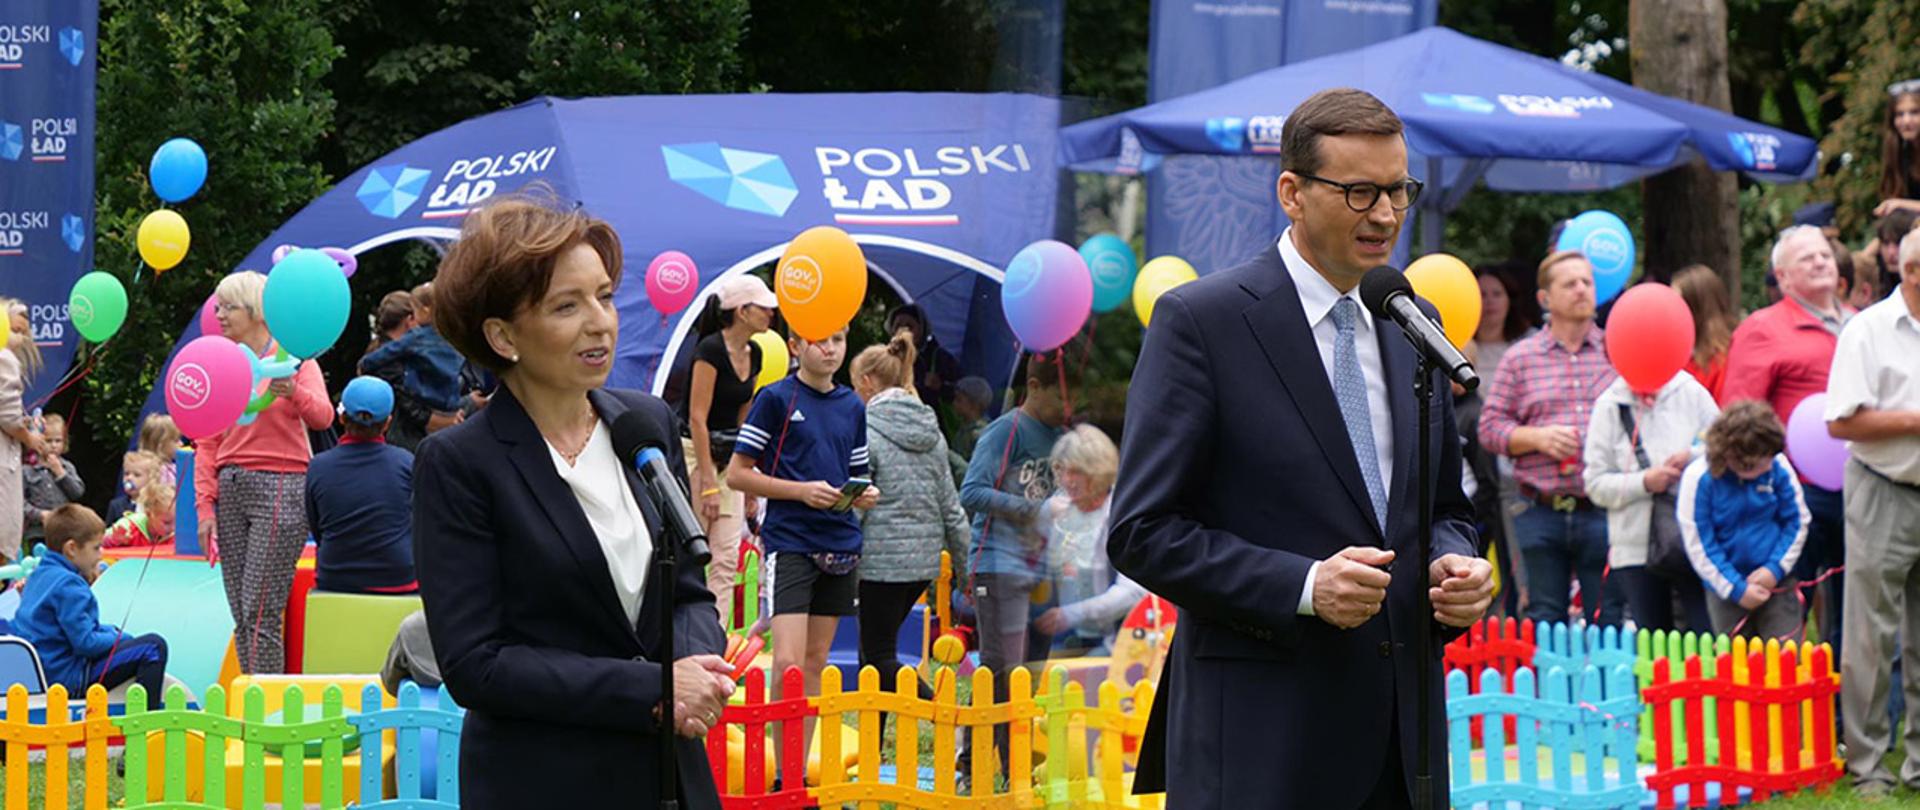 Na zdjęciu premier Morawiecki i minister Maląg. w tle bawiące się dzieci. Widać kolorowe balony w rękach, kolorowy płotek oddzielający miejsce zabawy dzieci. 